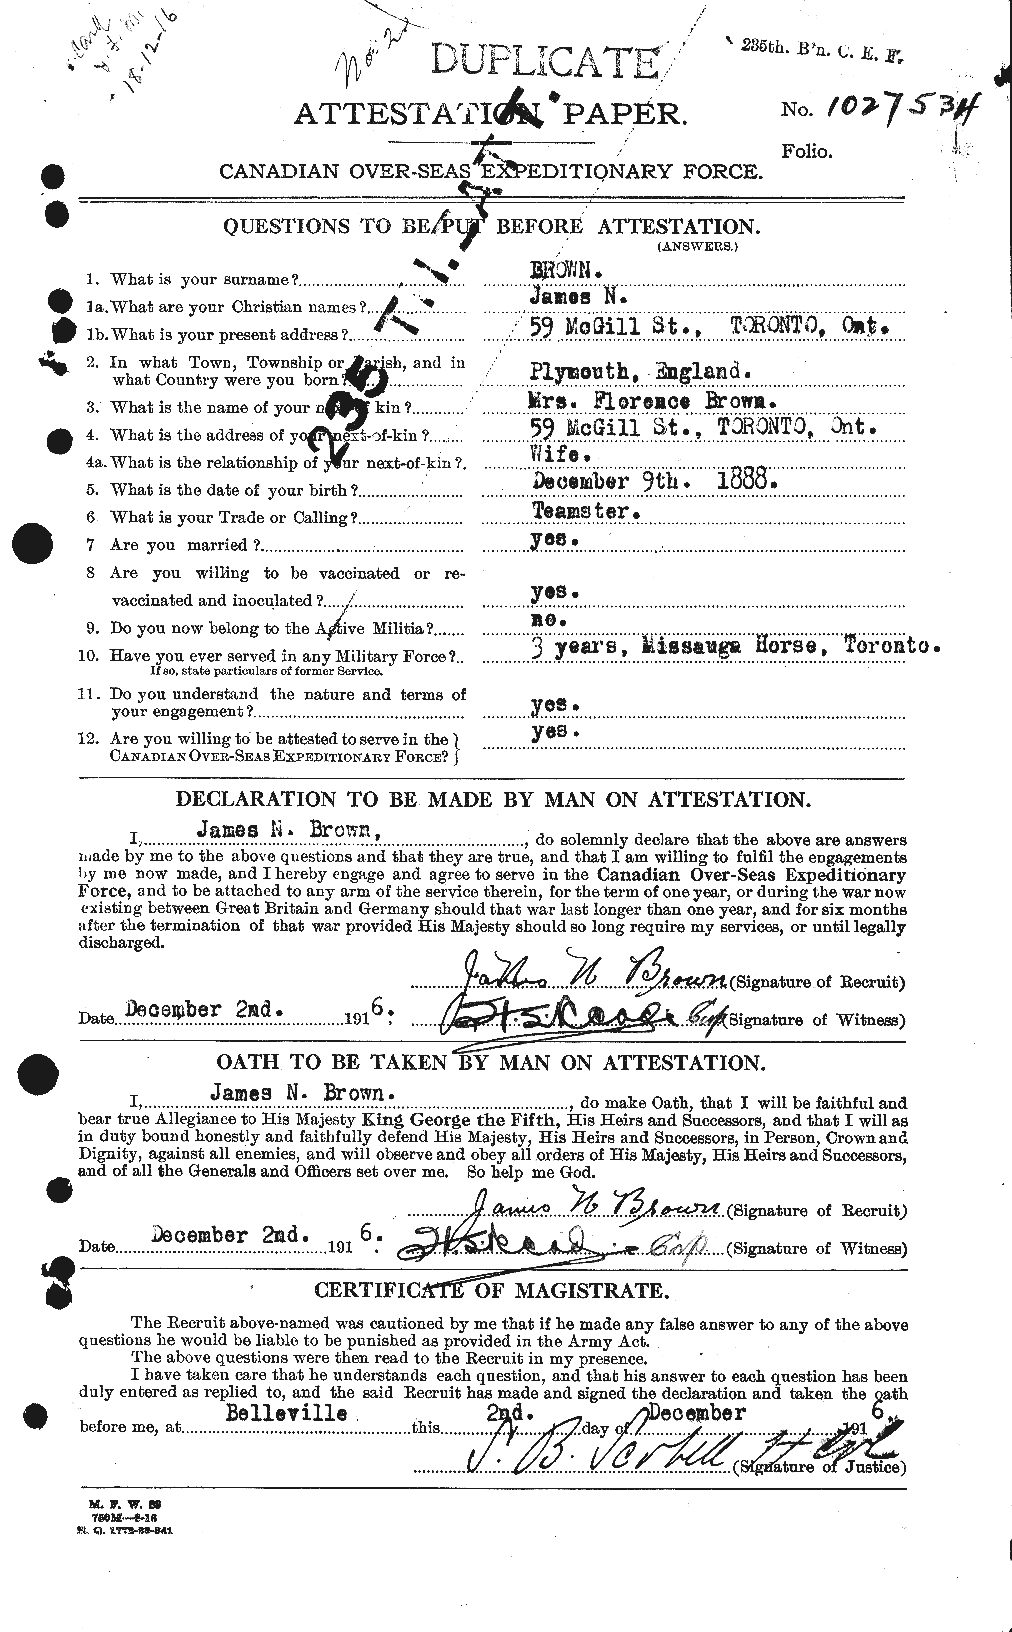 Dossiers du Personnel de la Première Guerre mondiale - CEC 269561a